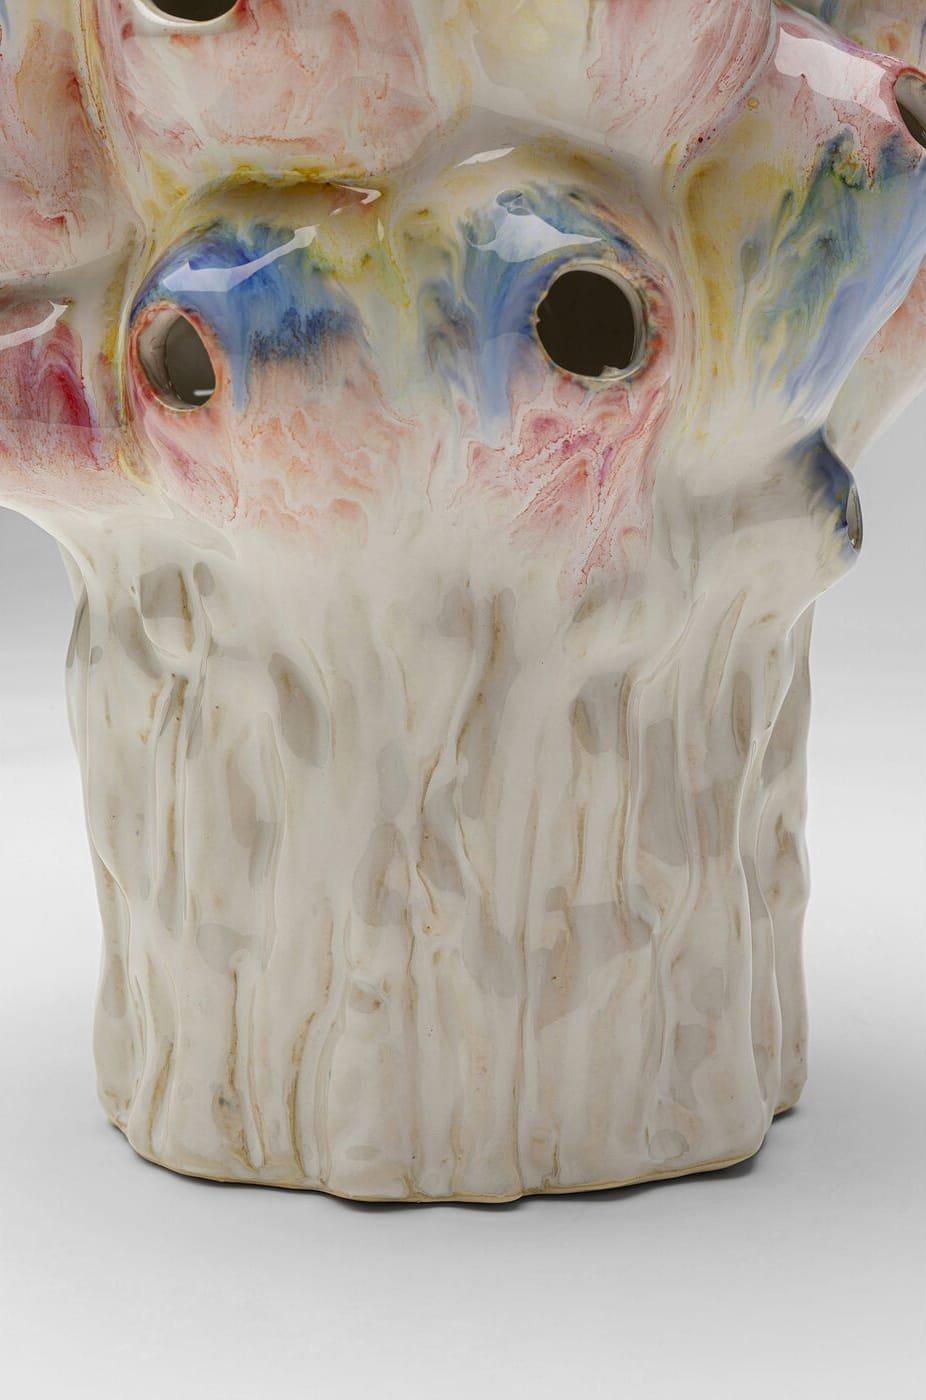 KARE Design Vase Collina Colore 33  